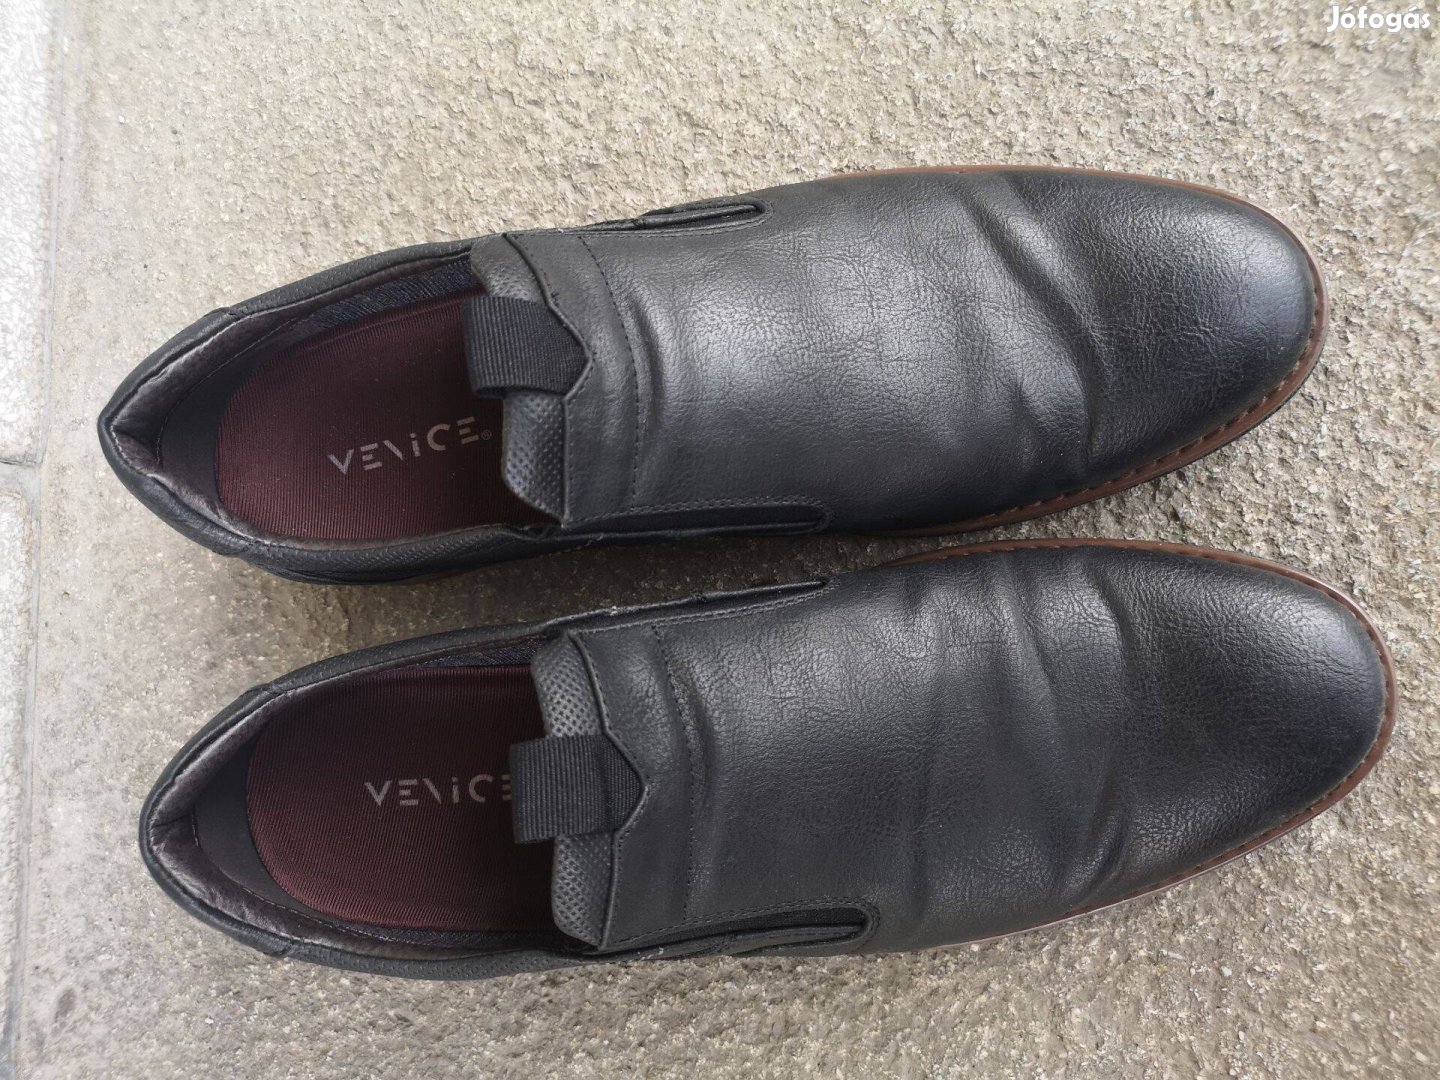 Megkímélt, kiváló állapotú, 44-es Venice férfi cipő